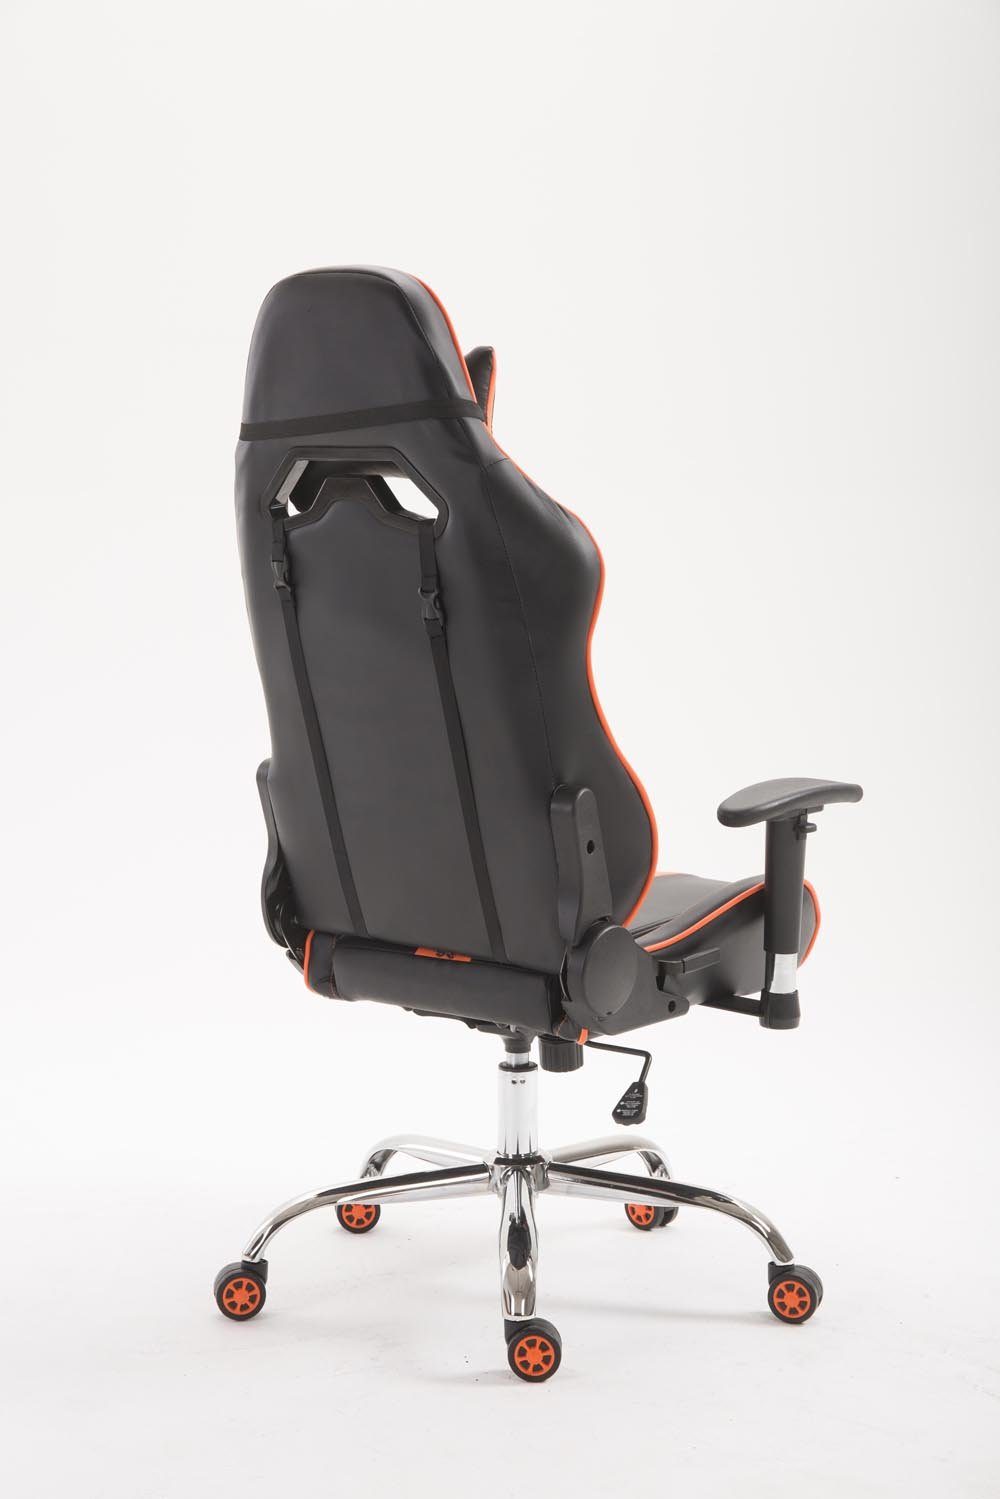 und Limit Gaming V2 schwarz/orange drehbar Kunstleder, höhenverstellbar Chair CLP